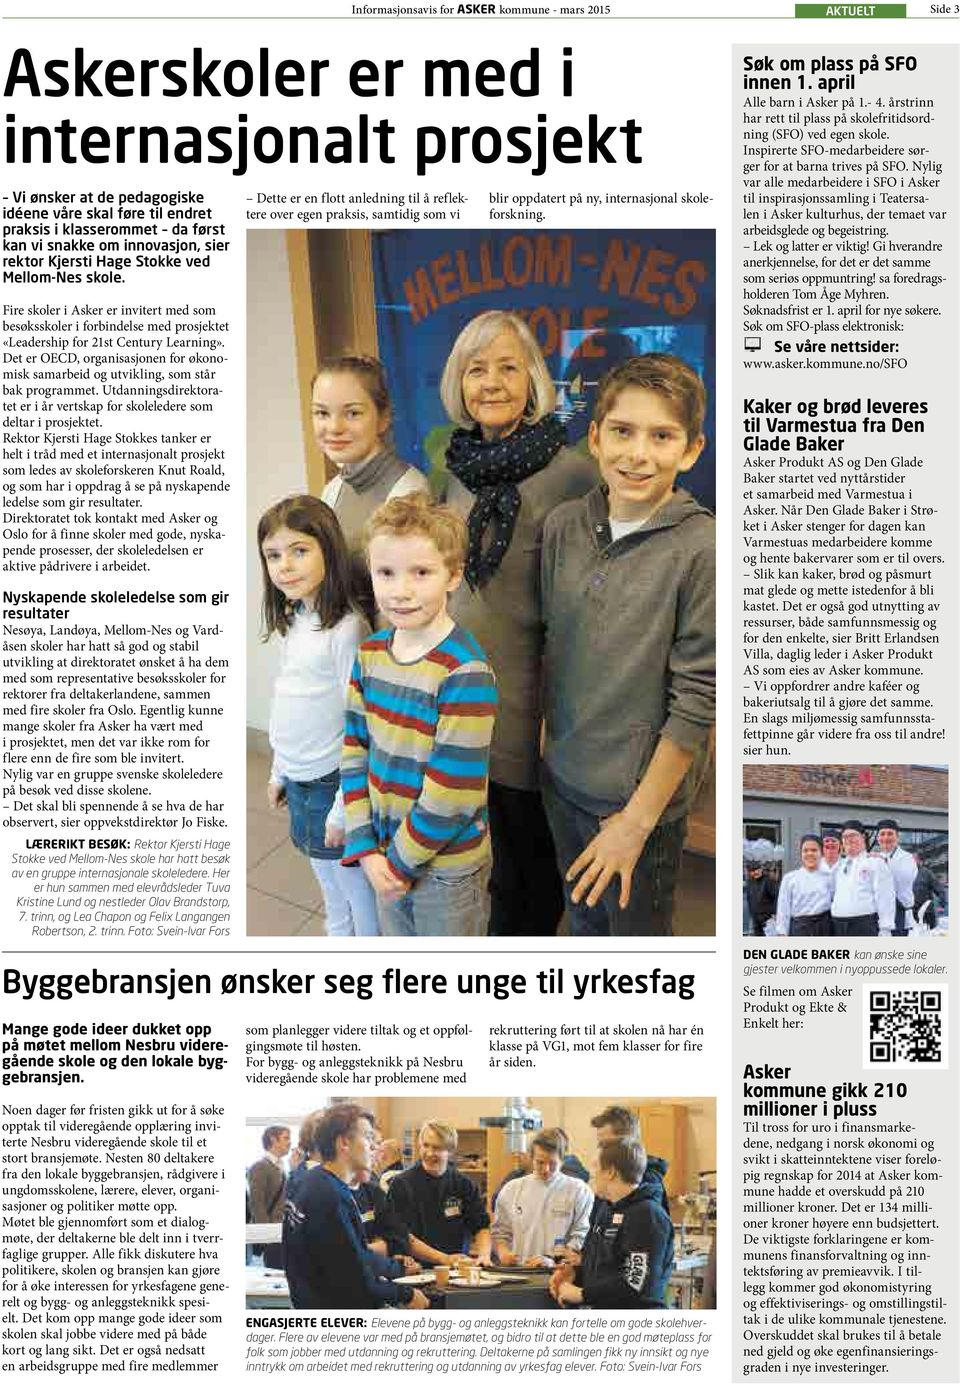 Fire skoler i Asker er invitert med som besøksskoler i forbindelse med prosjektet «Leadership for 21st Century Learning».